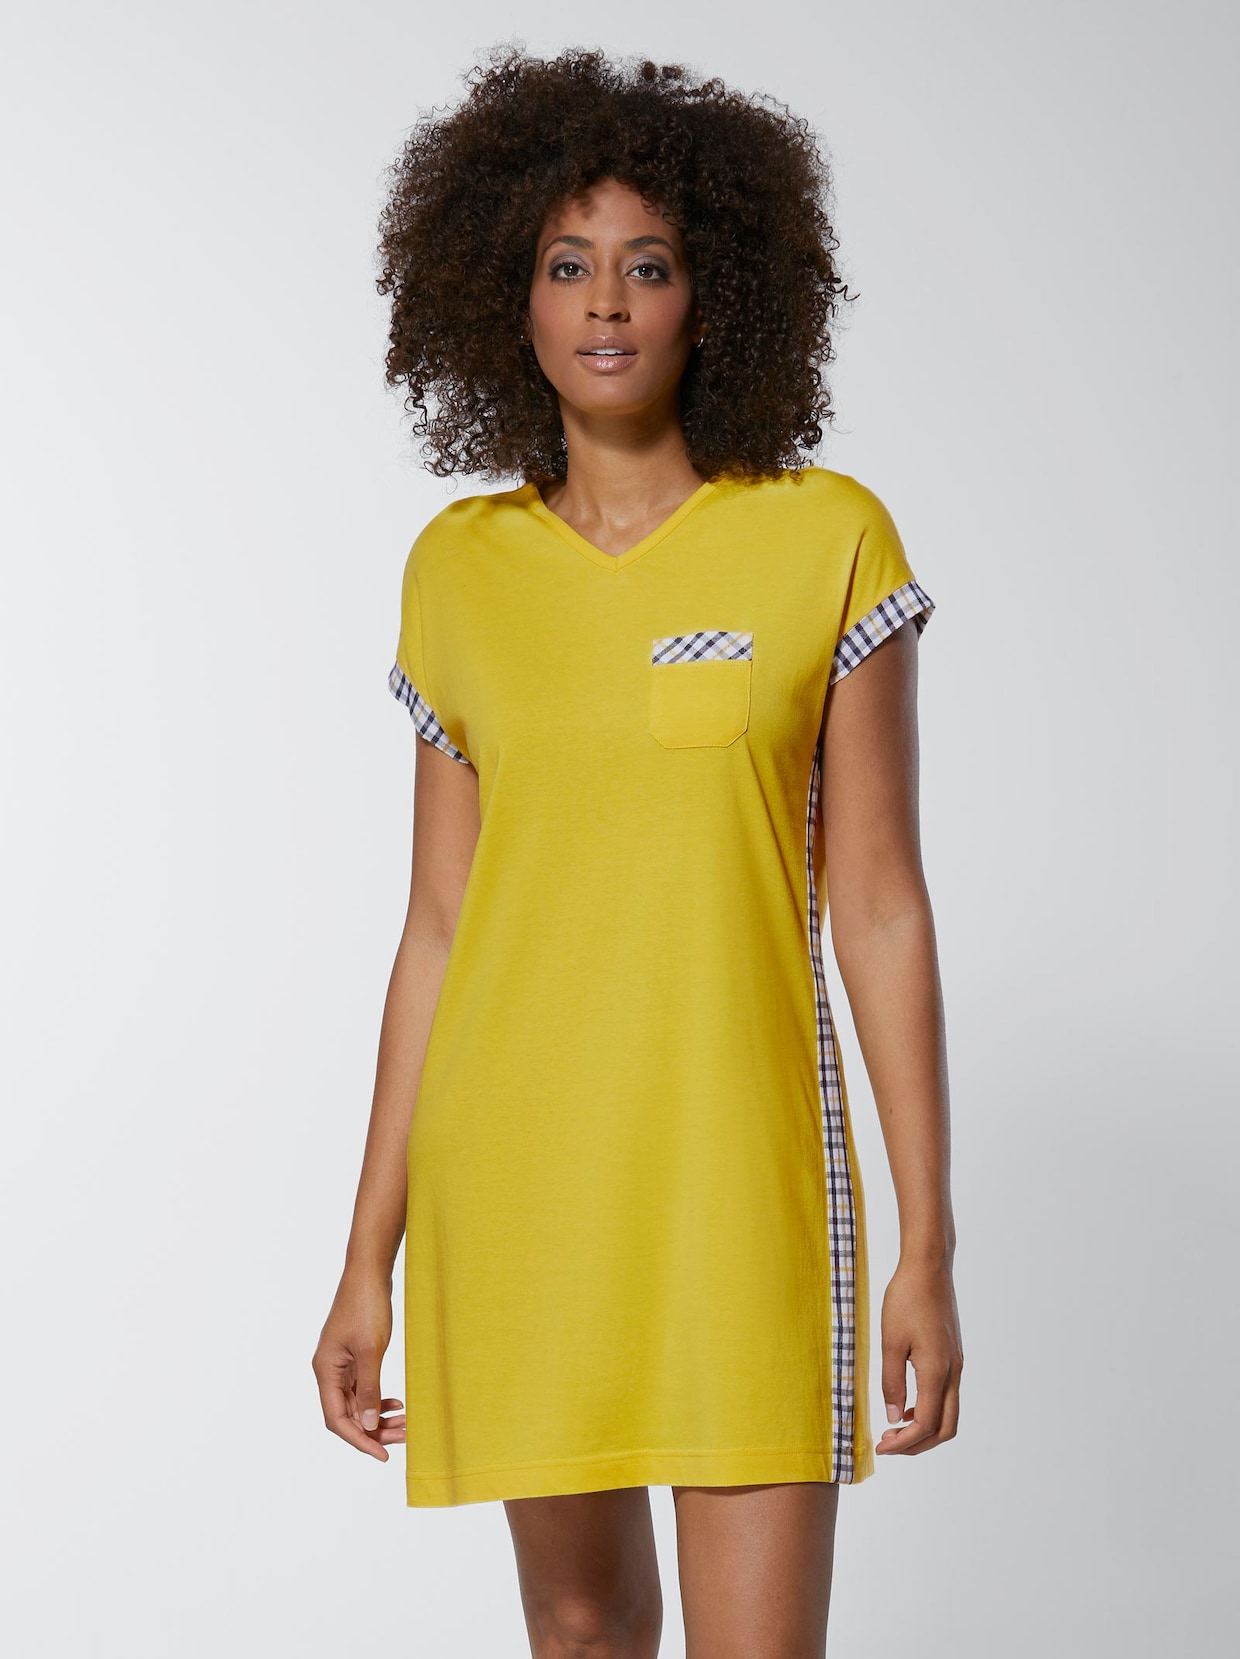 wäschepur Sleepshirt - gelb